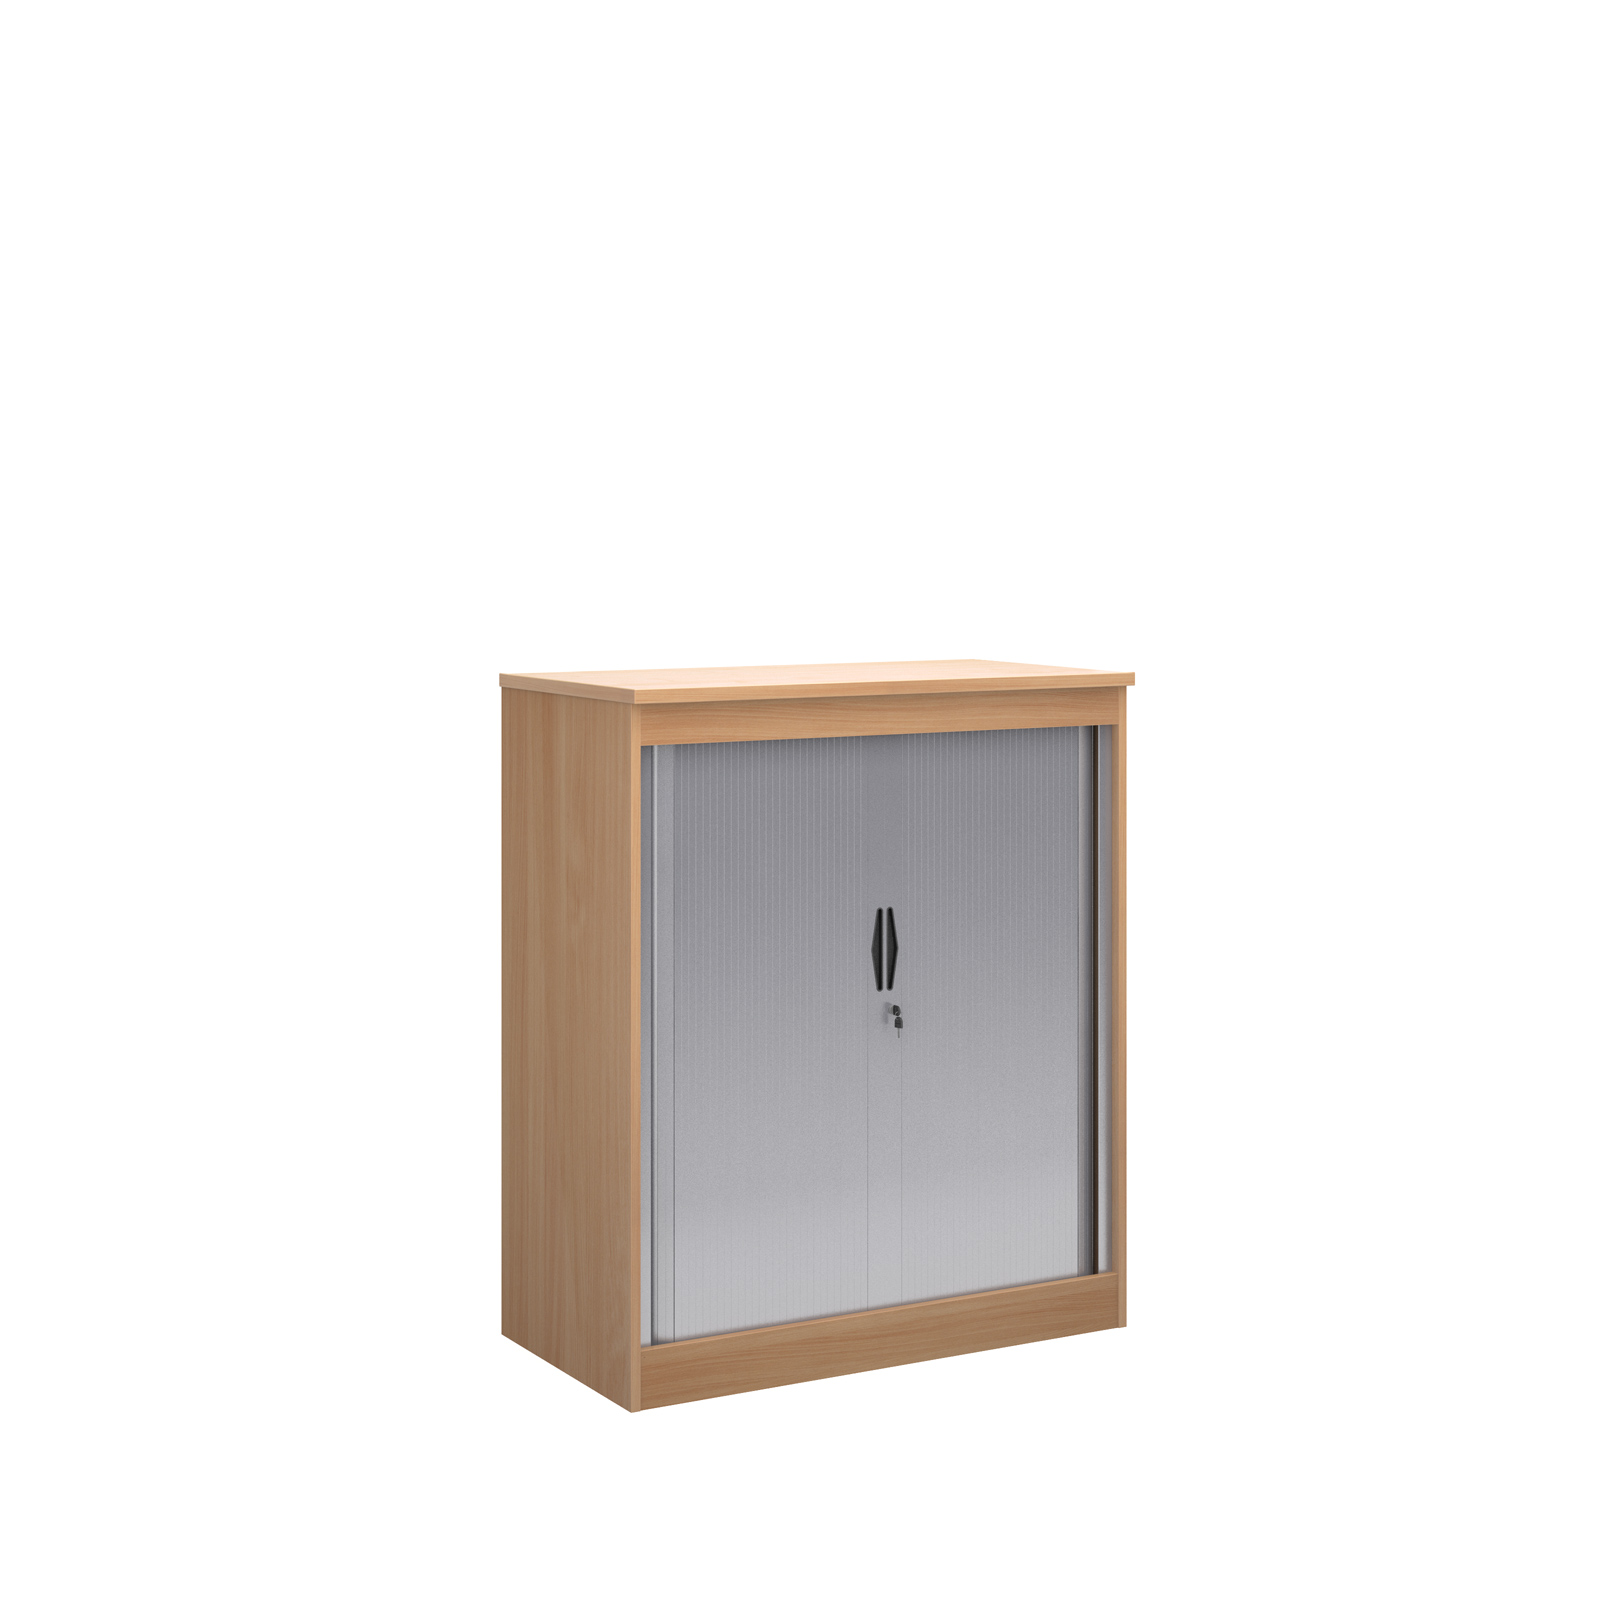 Systems horizontal tambour door cupboard 1200mm high - beech